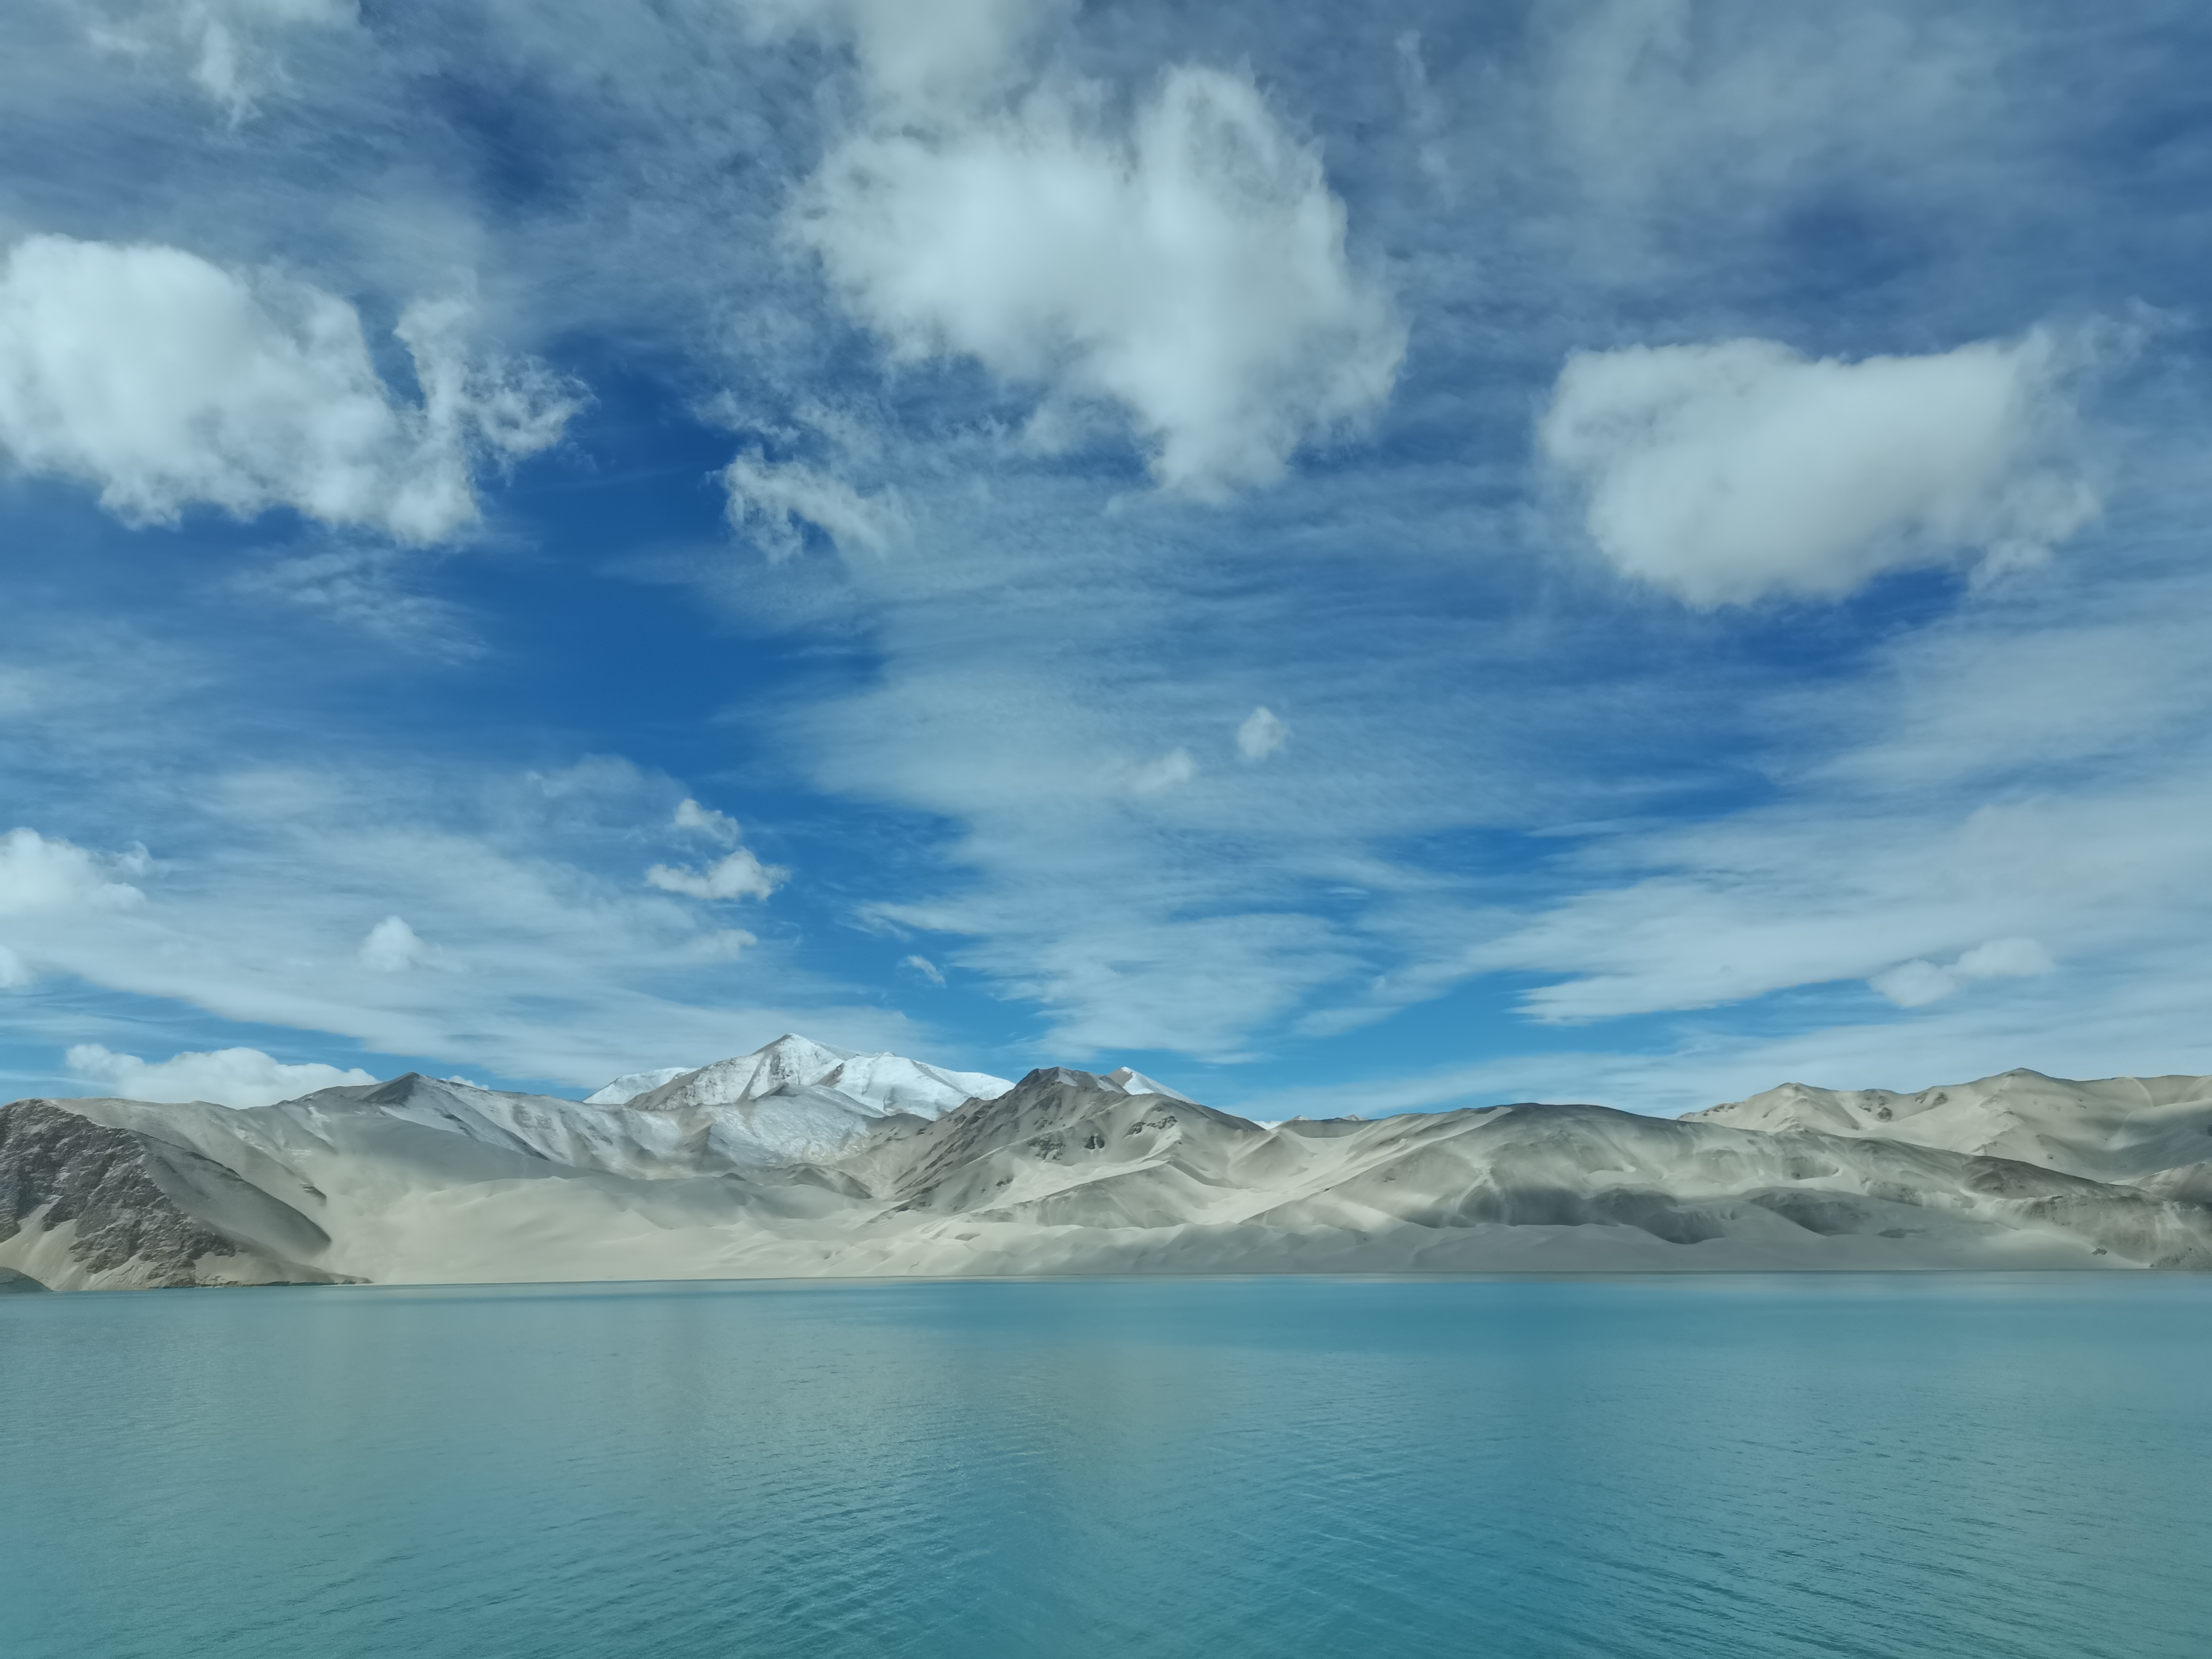 白沙湖湖面海拔3290米,白沙湖承接了东帕米尔高原的雪山融水,背